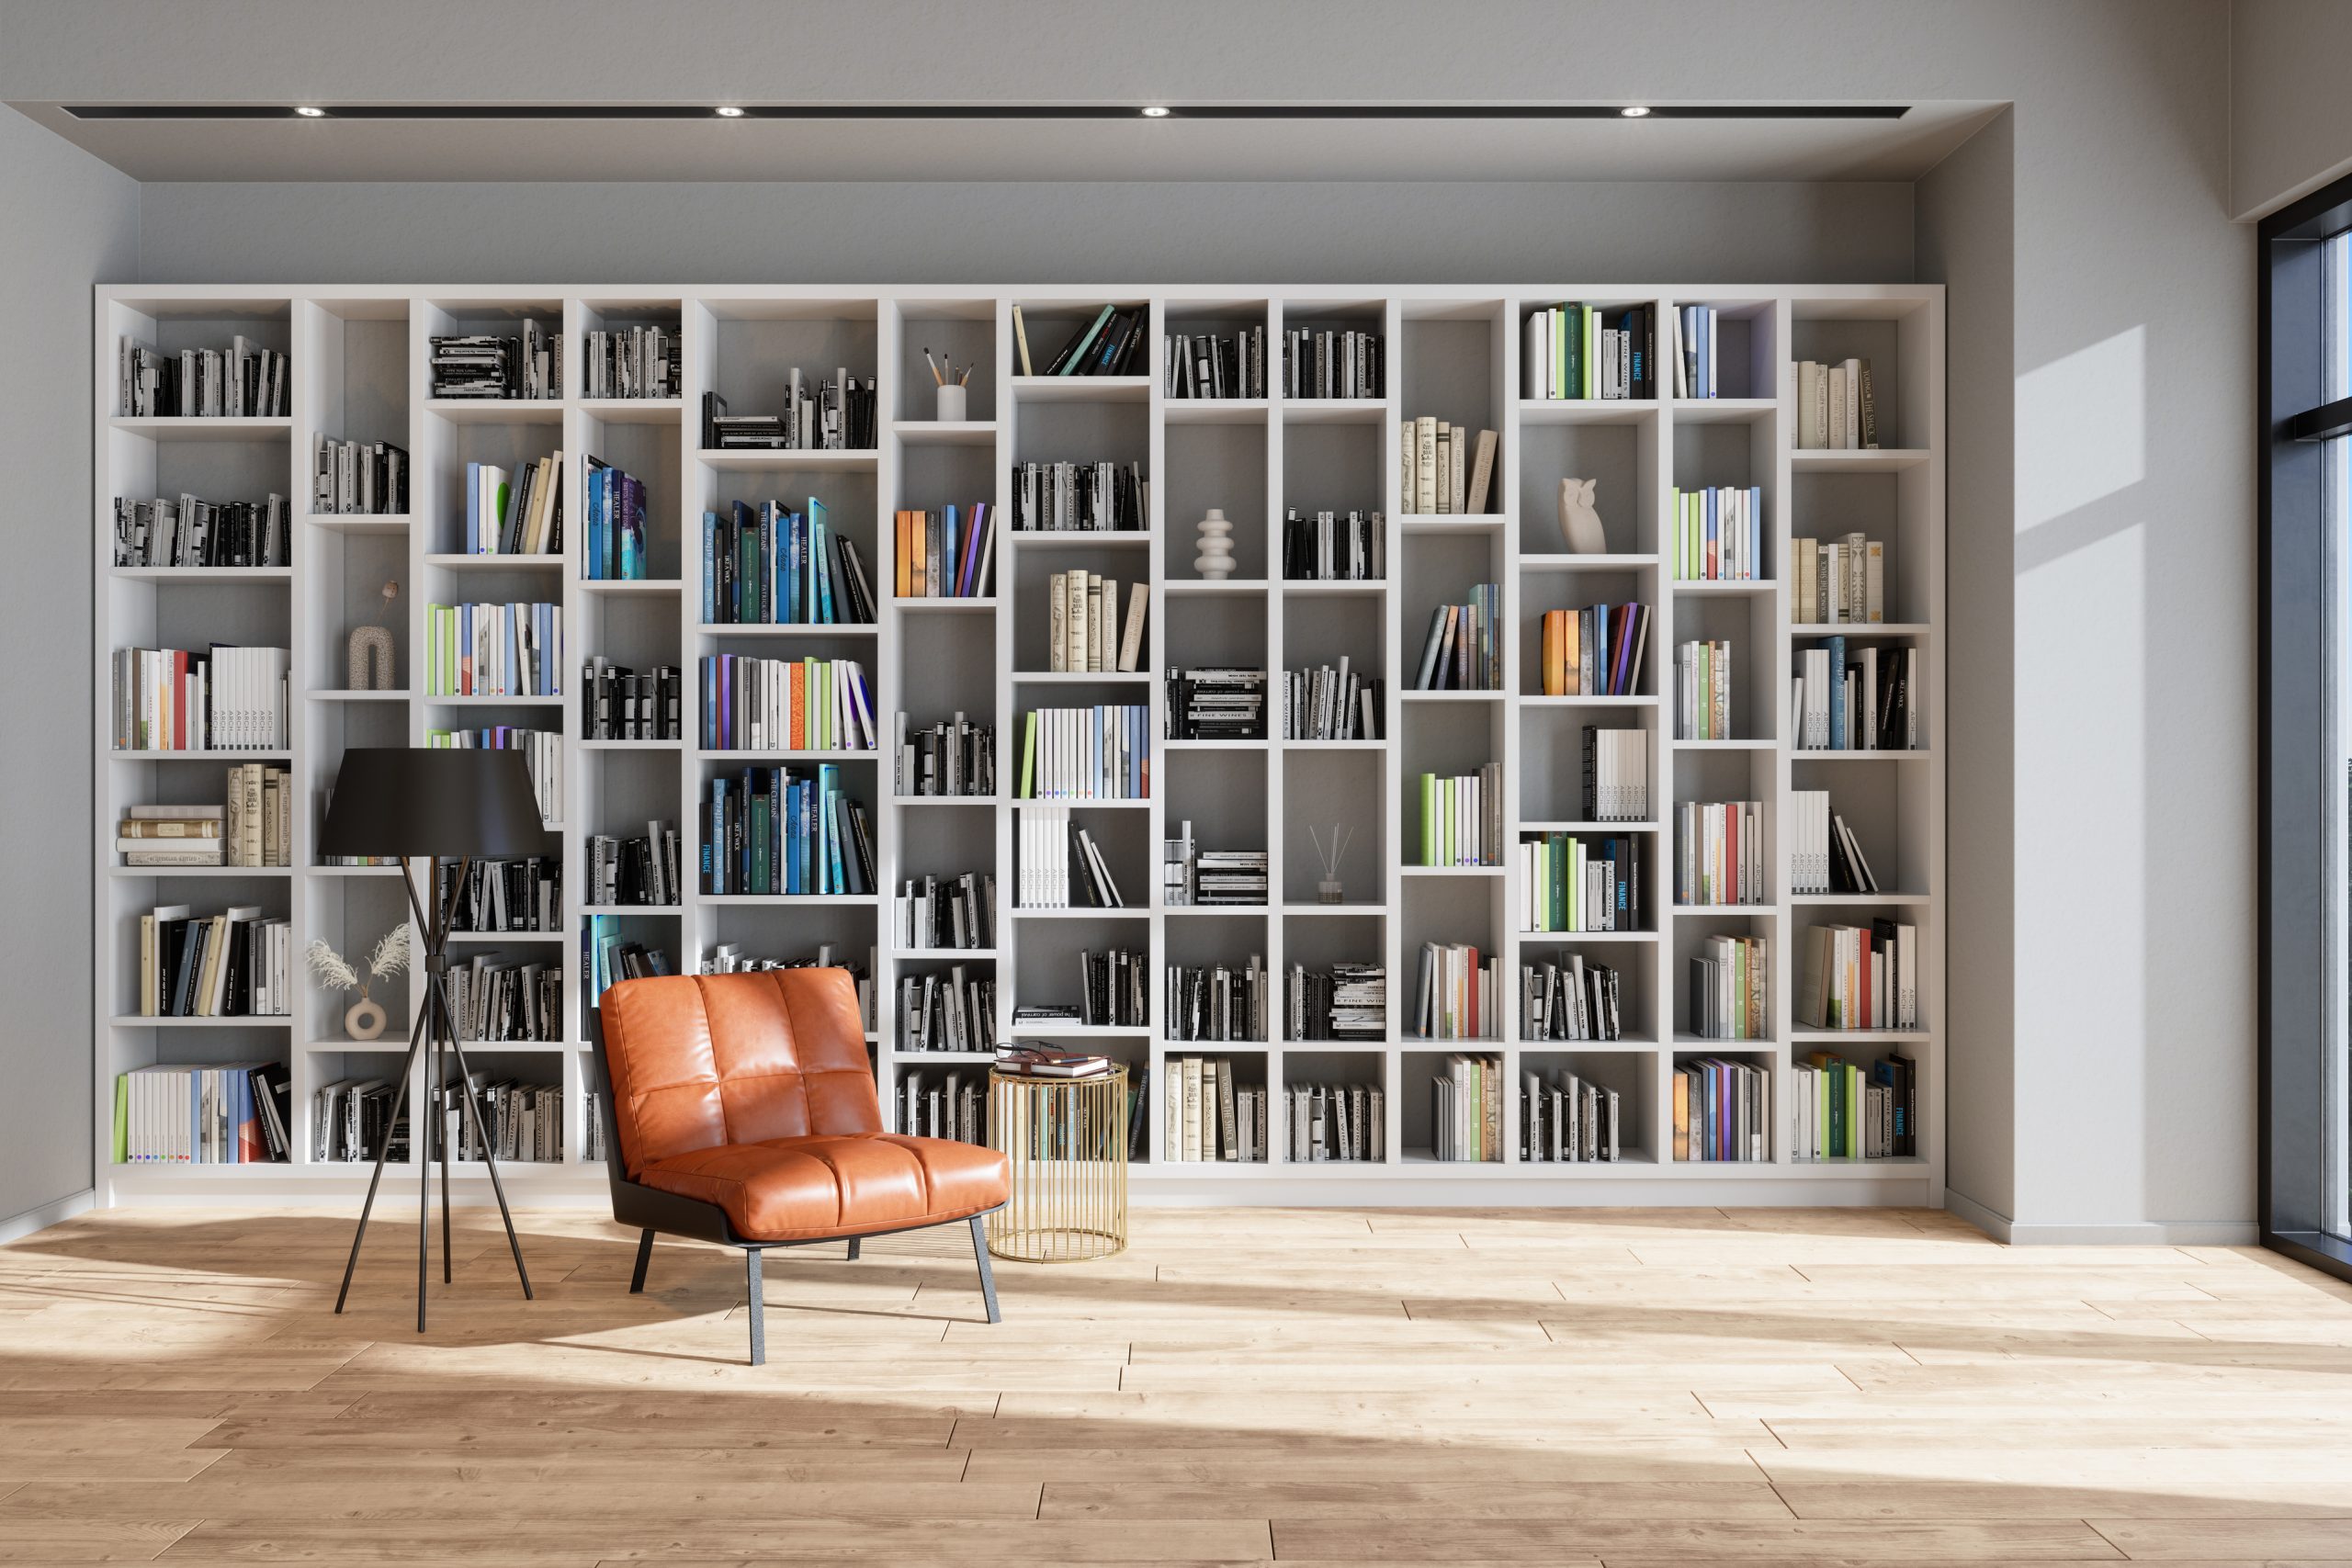 4 Ιδέες για τέλειο design στη βιβλιοθήκη σου!